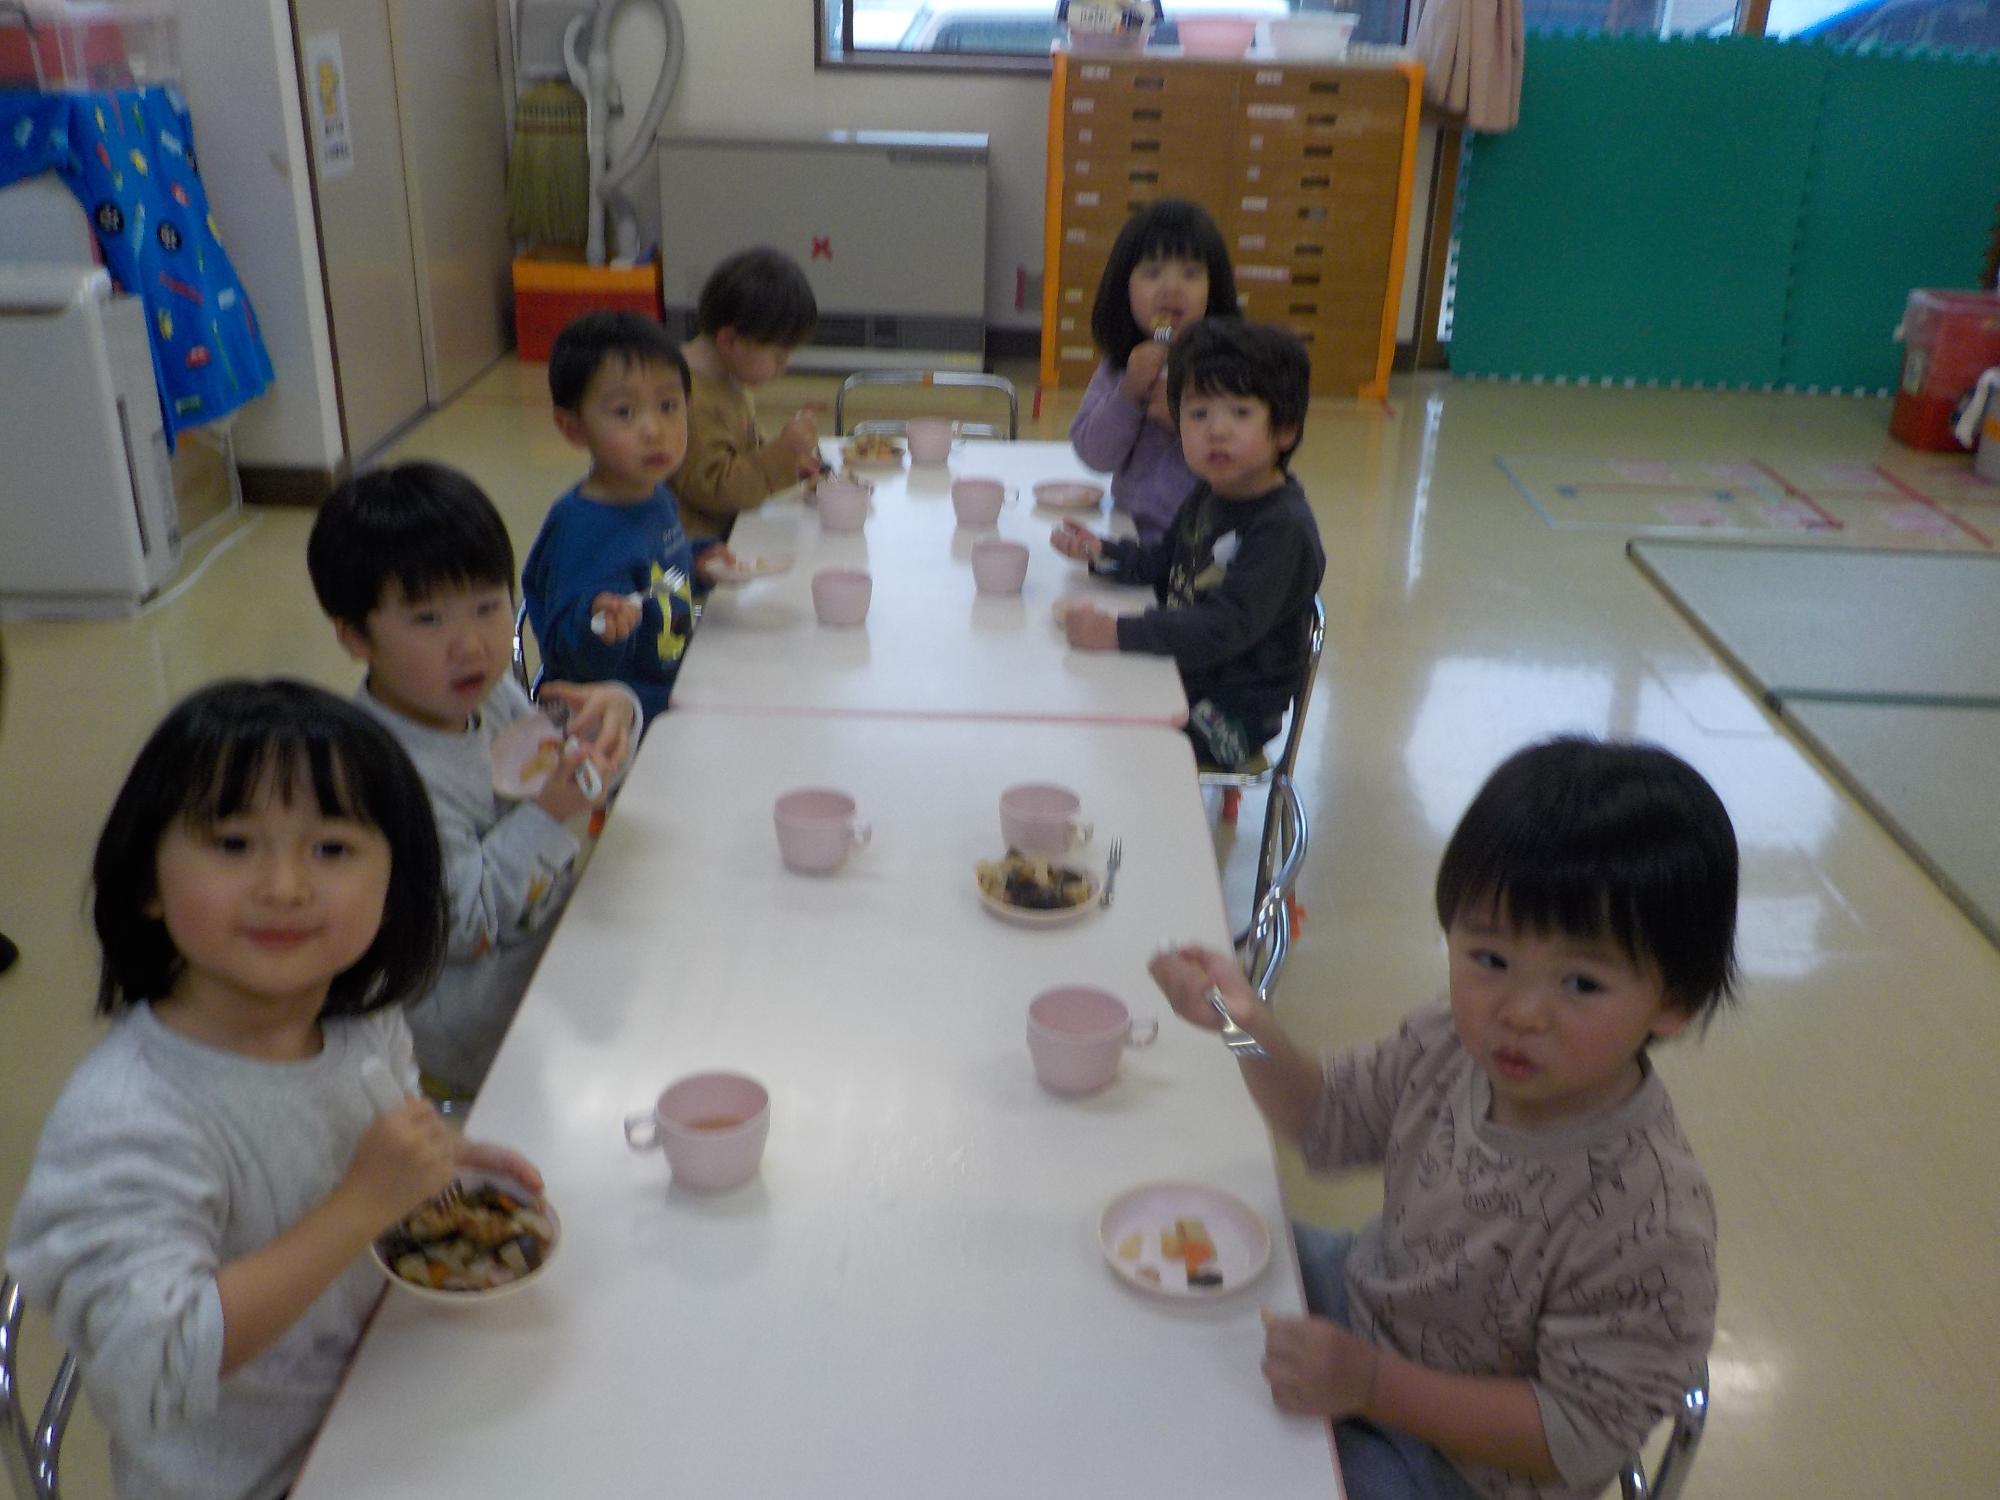 テーブルに向かい、椅子に座っておやつのおでんを食べているうさぎ組の子どもたち